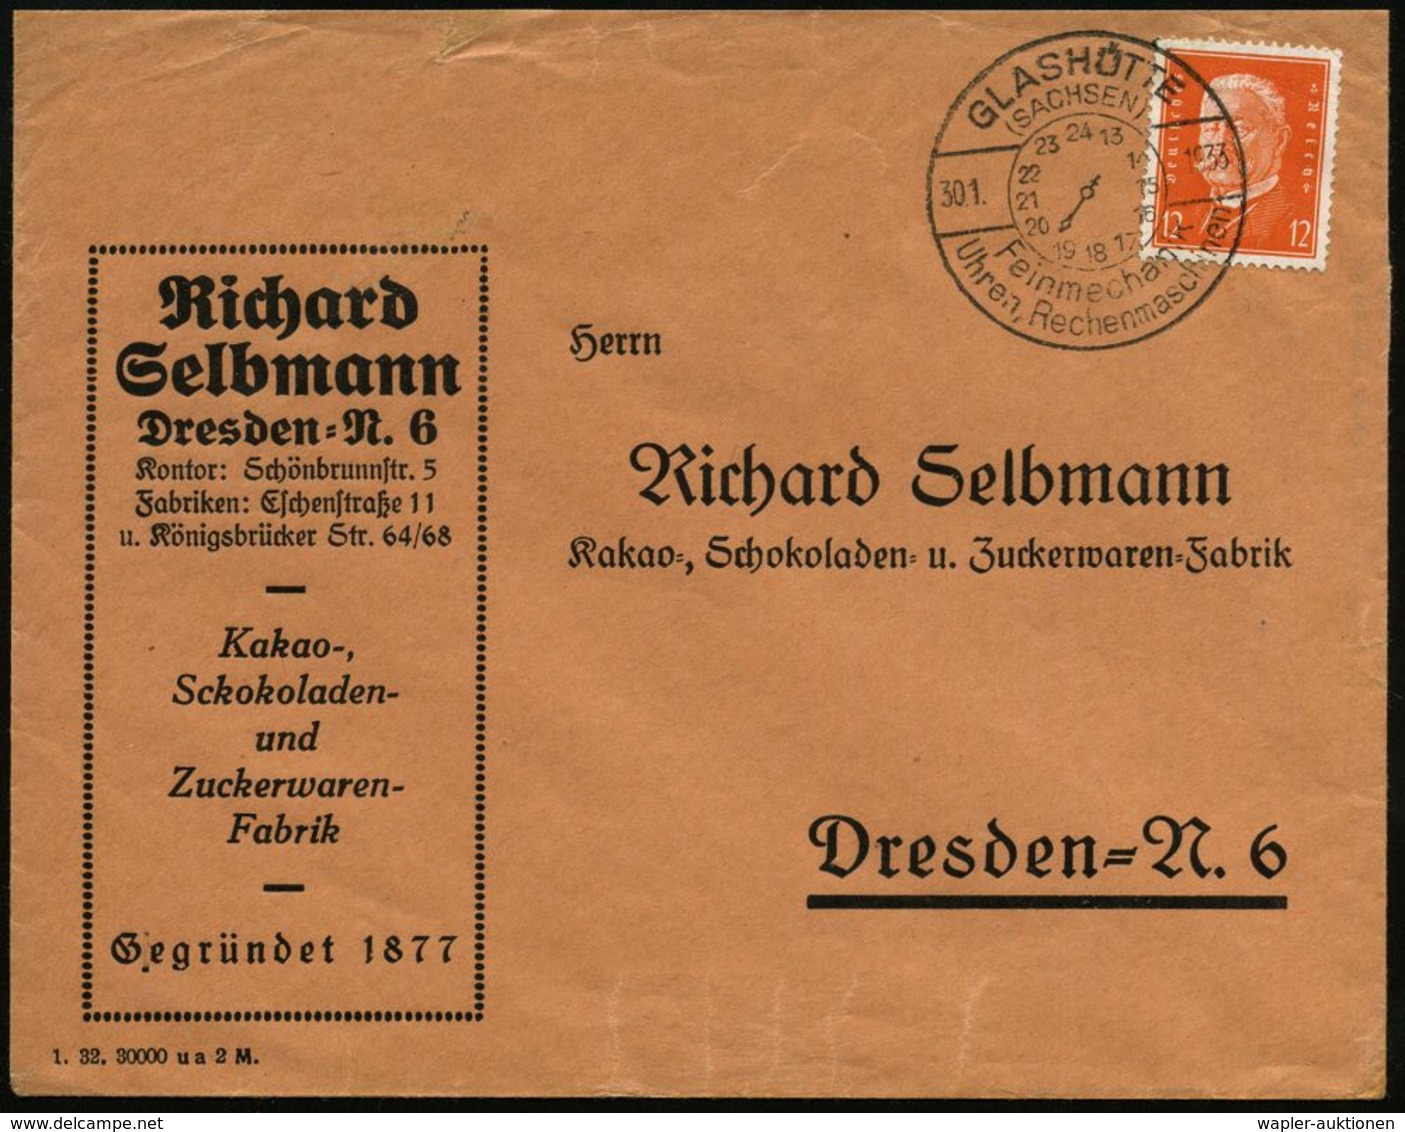 UHR / ZEITMESSUNG : GLASHÜTTE/ (SACHSEN)/ Feinmechanik/ Uhren,Rechenmaschinen 1933 (30.1.) HWSt Mit Zifferblatt (13-24 U - Orologeria